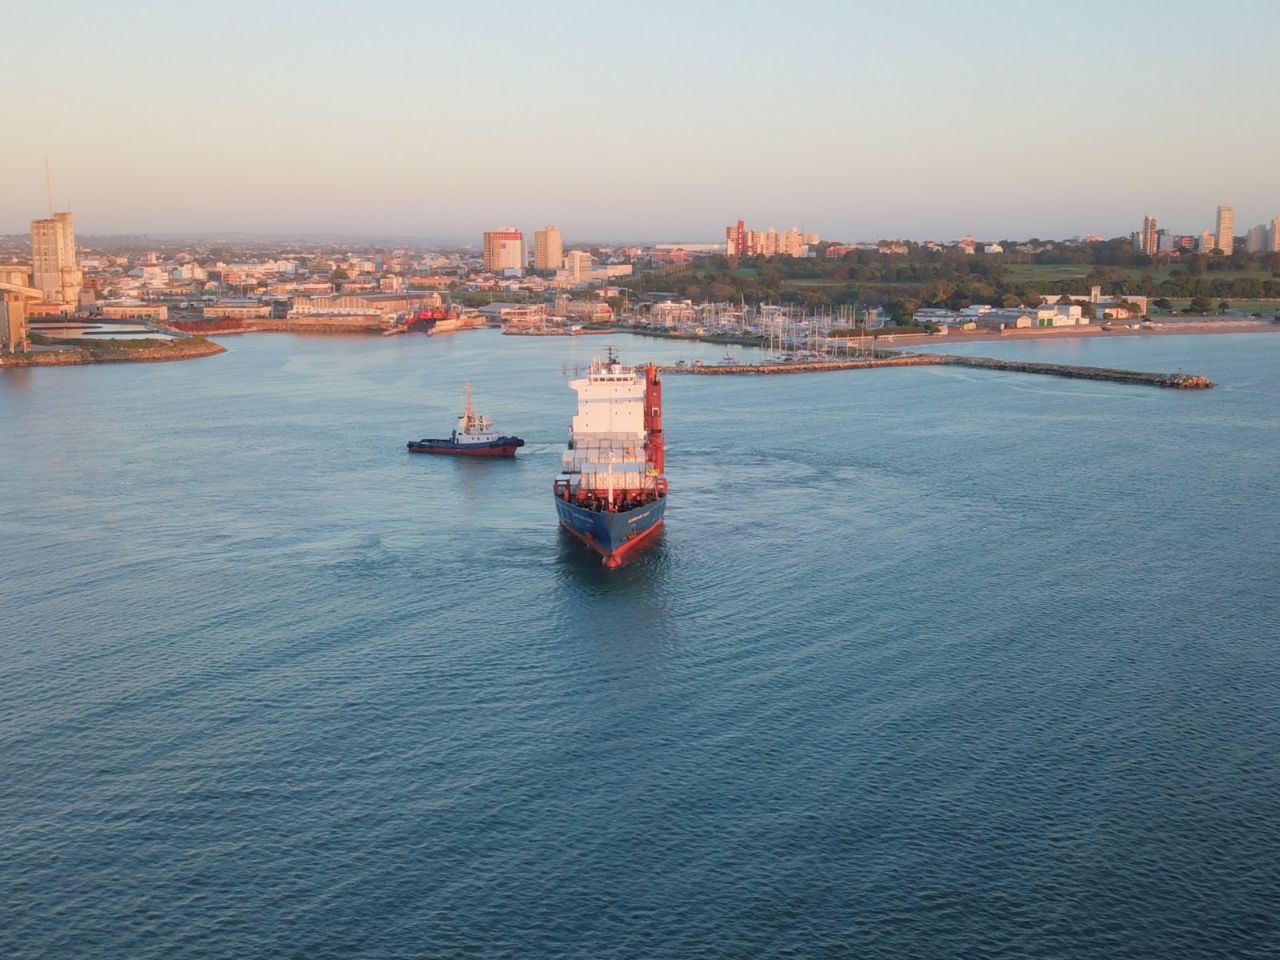 TC2 evalúa un barco propio en puerto Mar del Plata